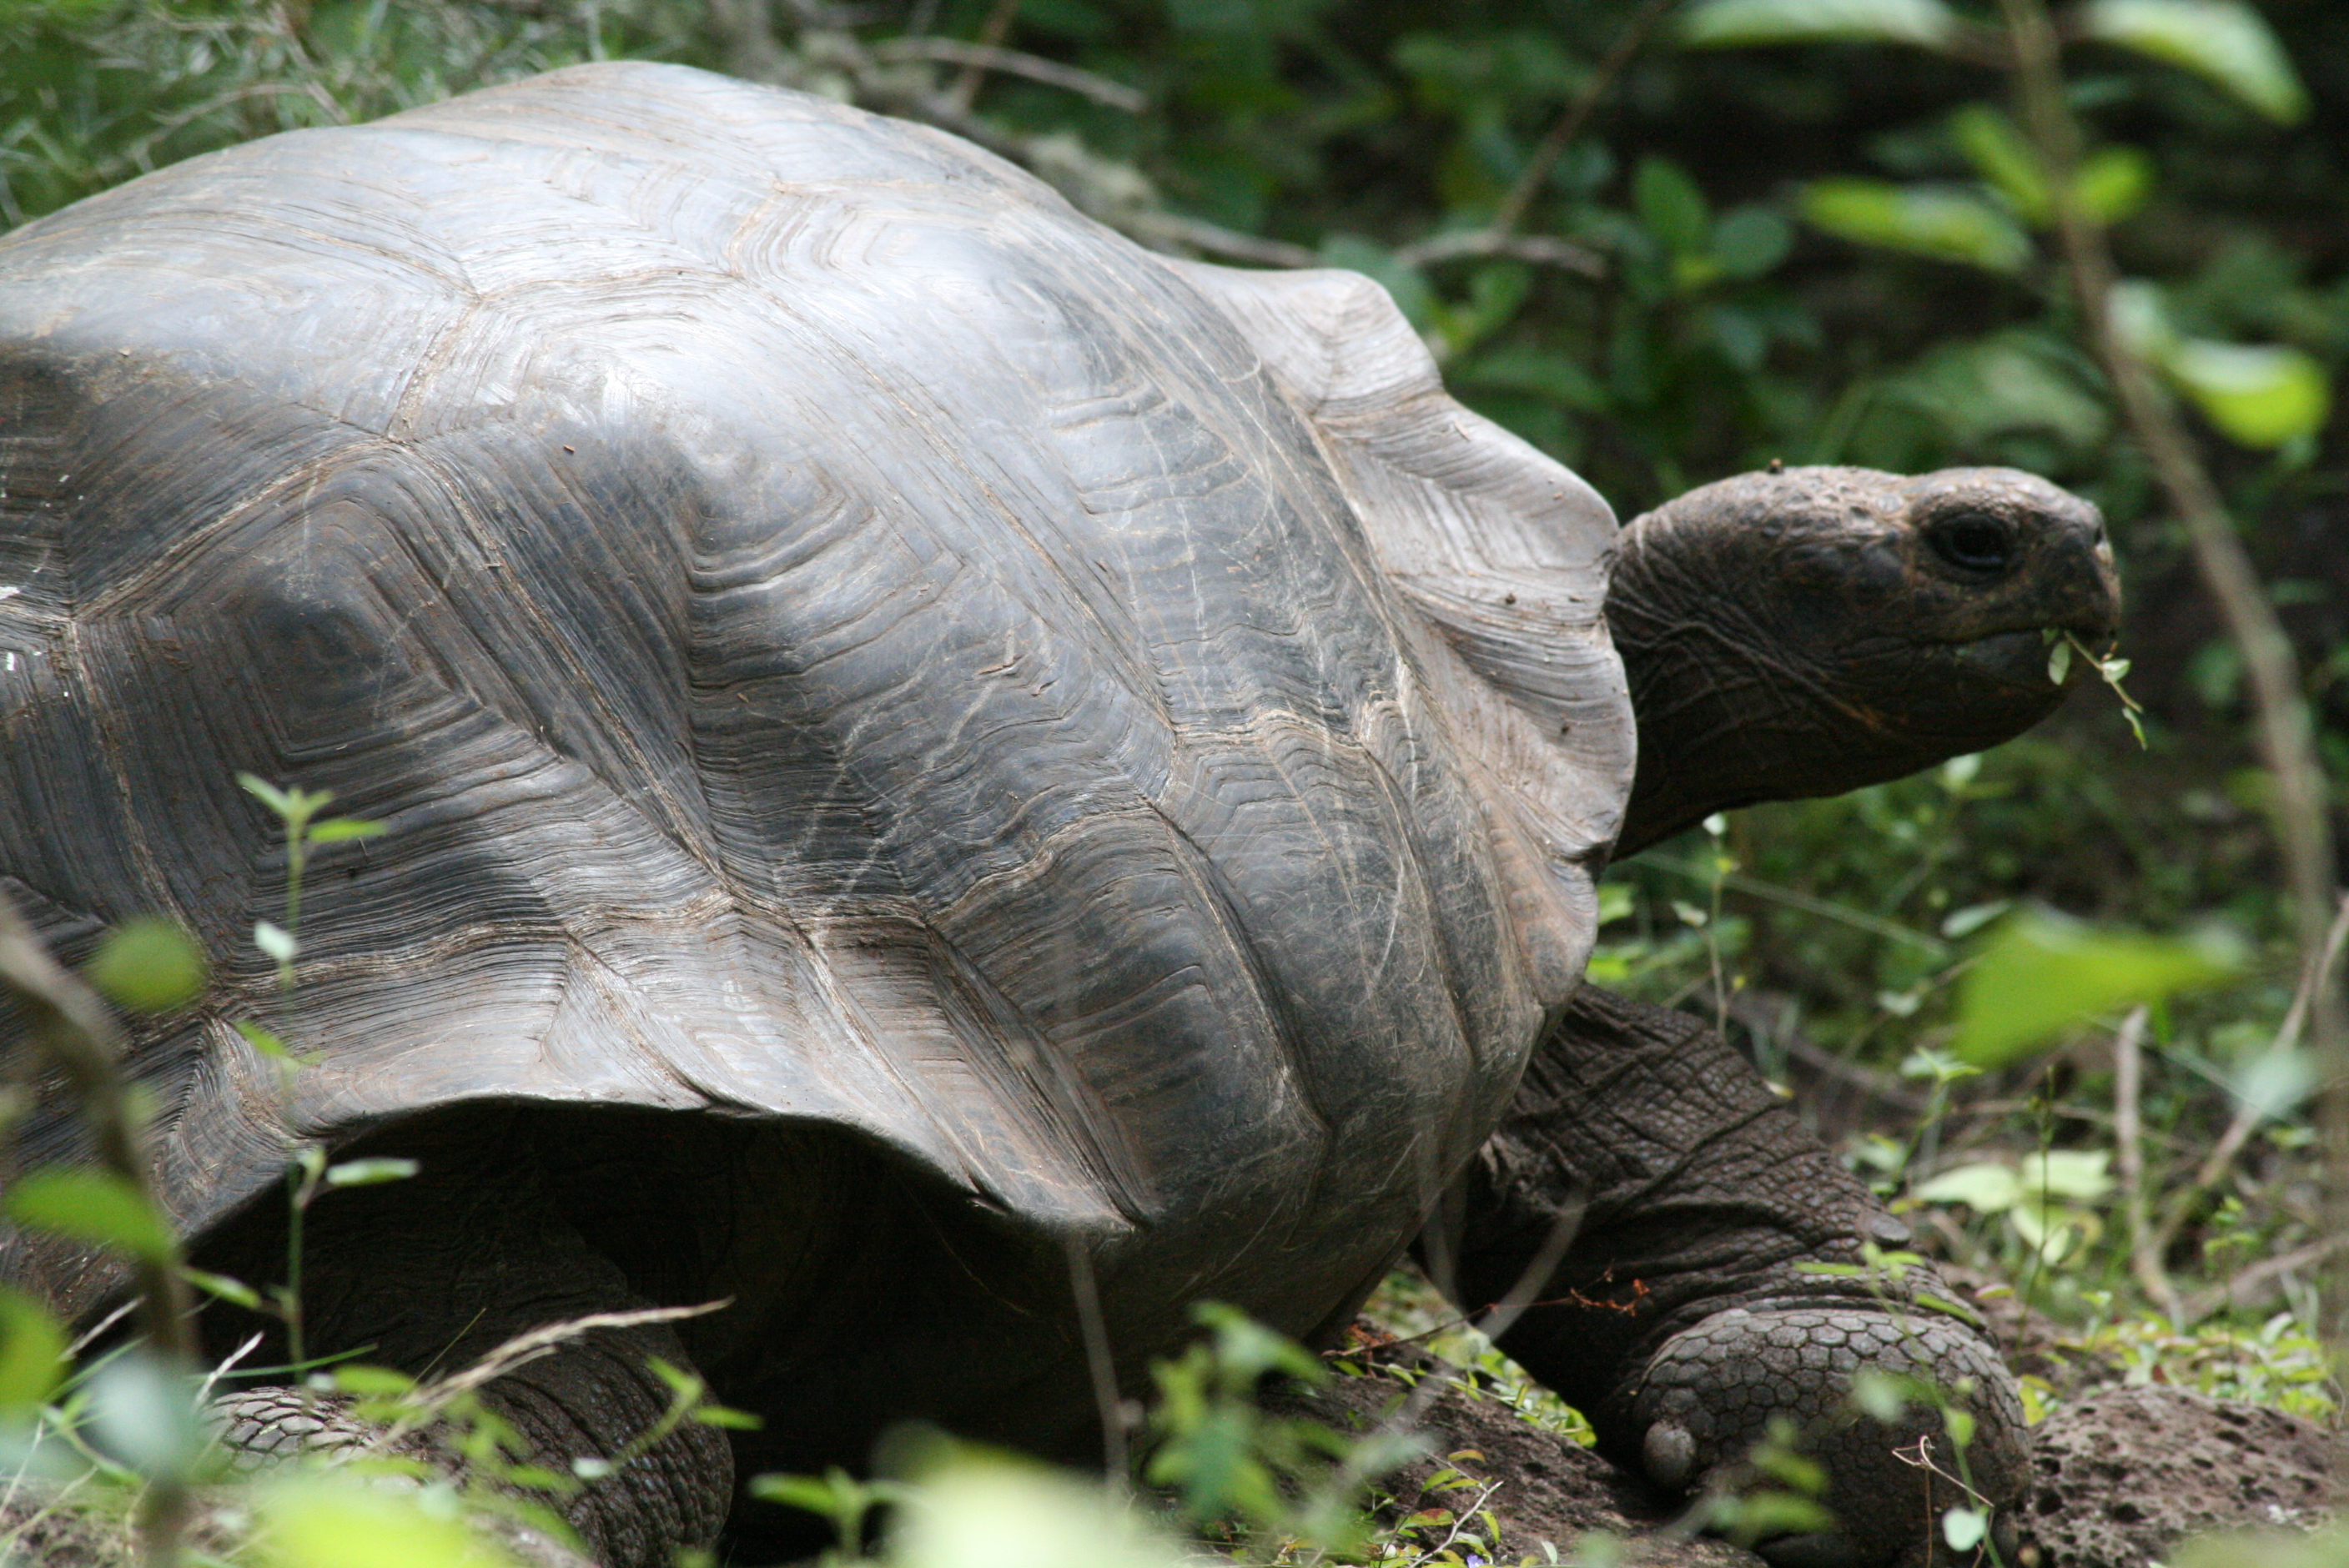 Абингдонские слоновые черепахи. Абингдонская слоновая черепаха. Галапагосская черепаха. Абингдонская слоновая черепаха одинокий Джордж. Галапагосская черепаха одинокий Джордж.